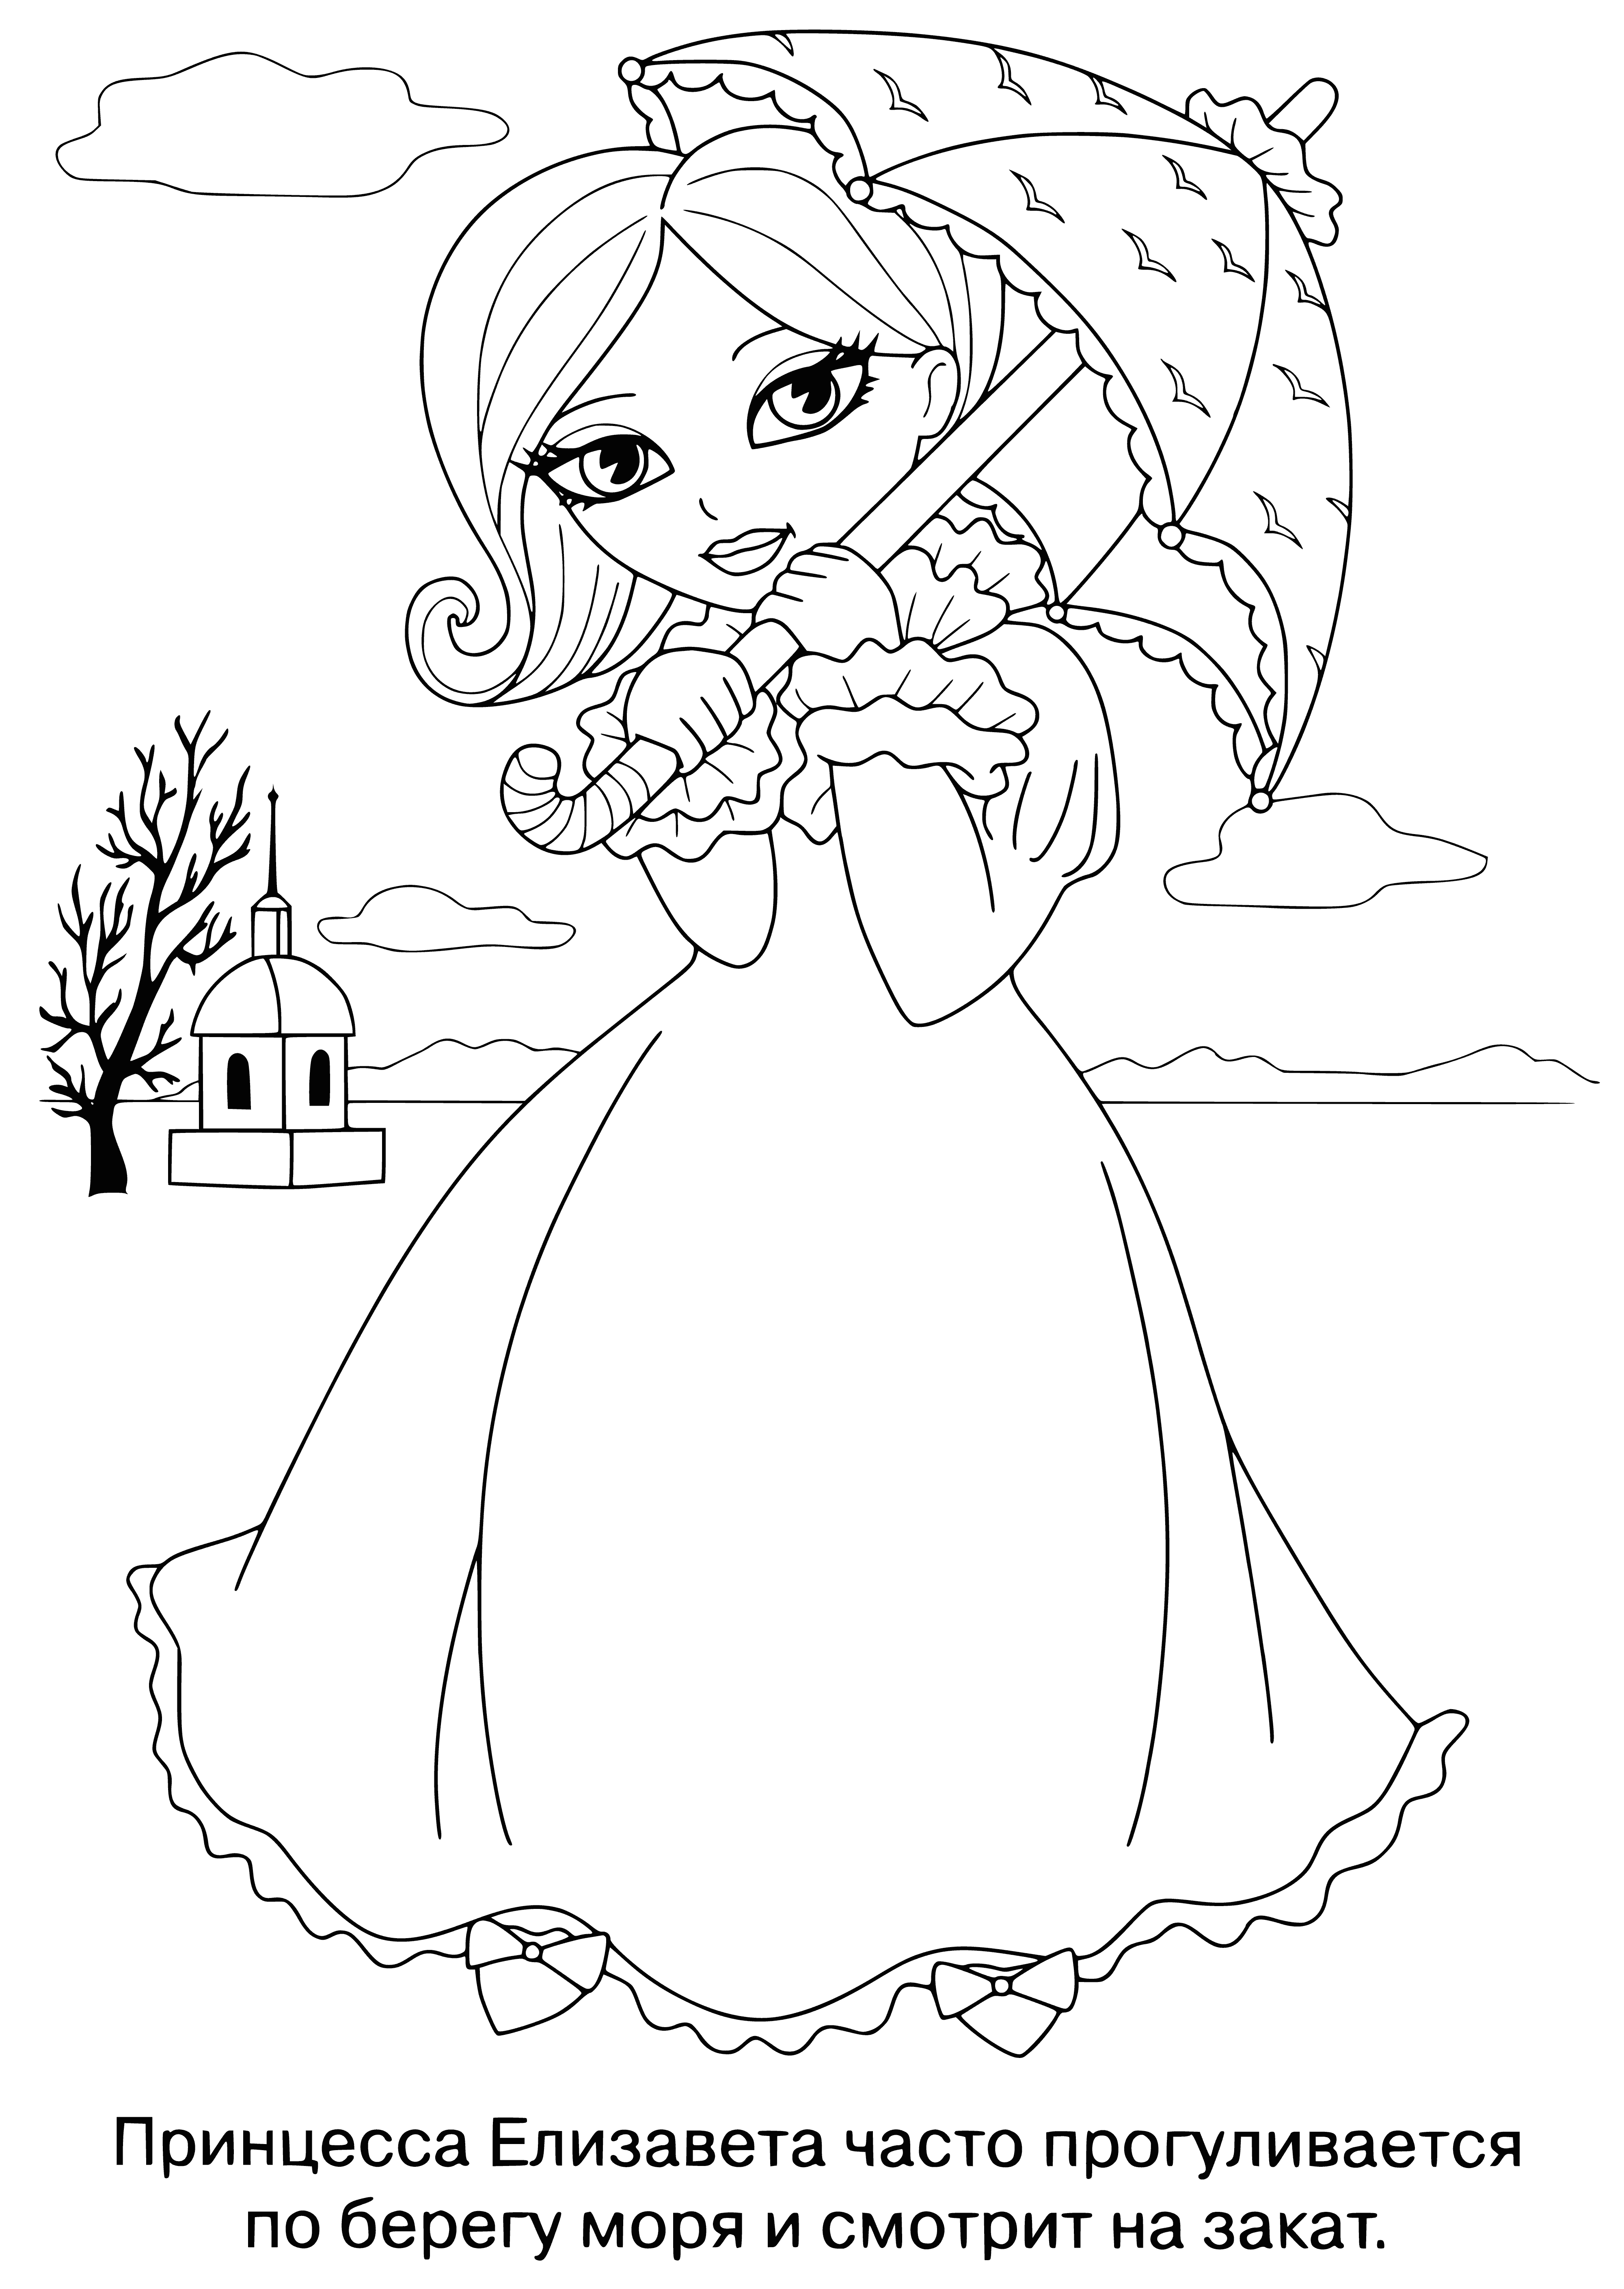 Princess elizabeth coloring page